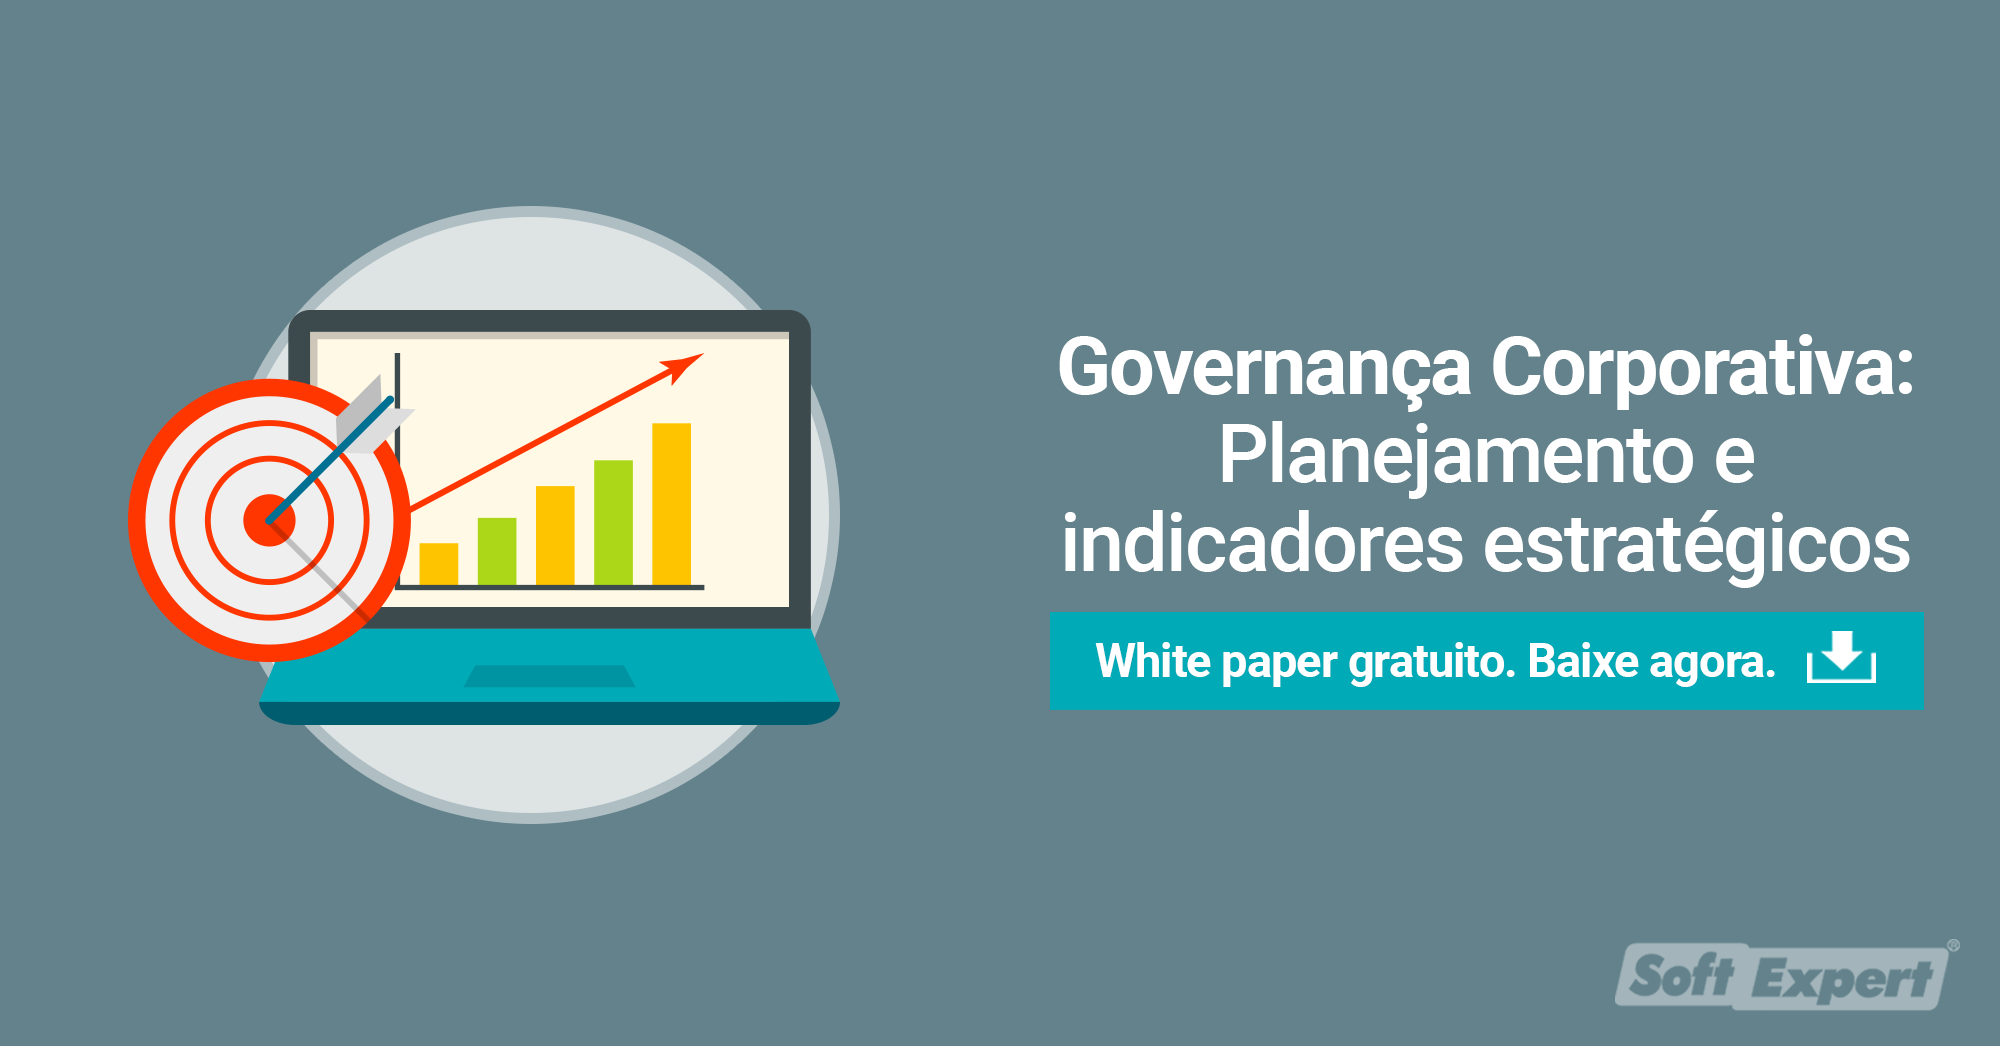 Governança Corporativa: Planejamento e indicadores estratégicos - SoftExpert